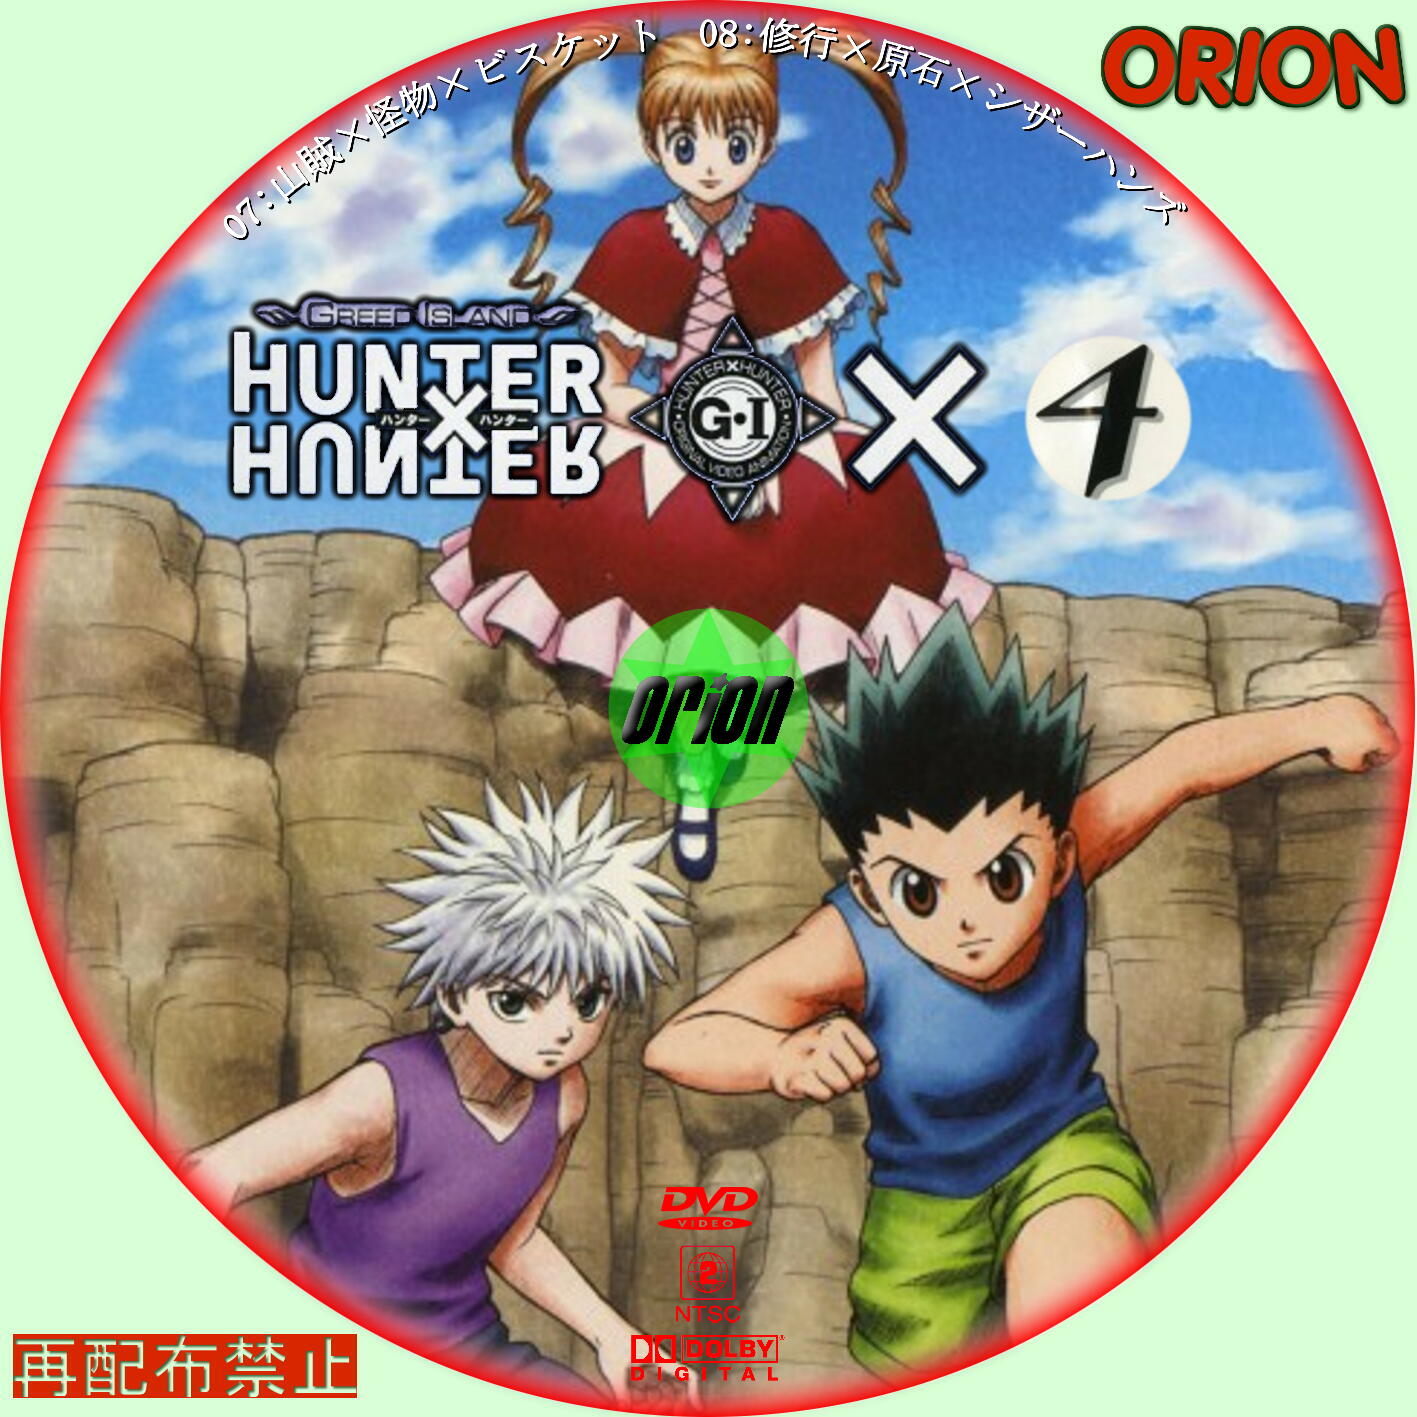 ハンターハンター 旧アニメ Hunter×Hunter DVD OVA全15巻の+inforsante.fr